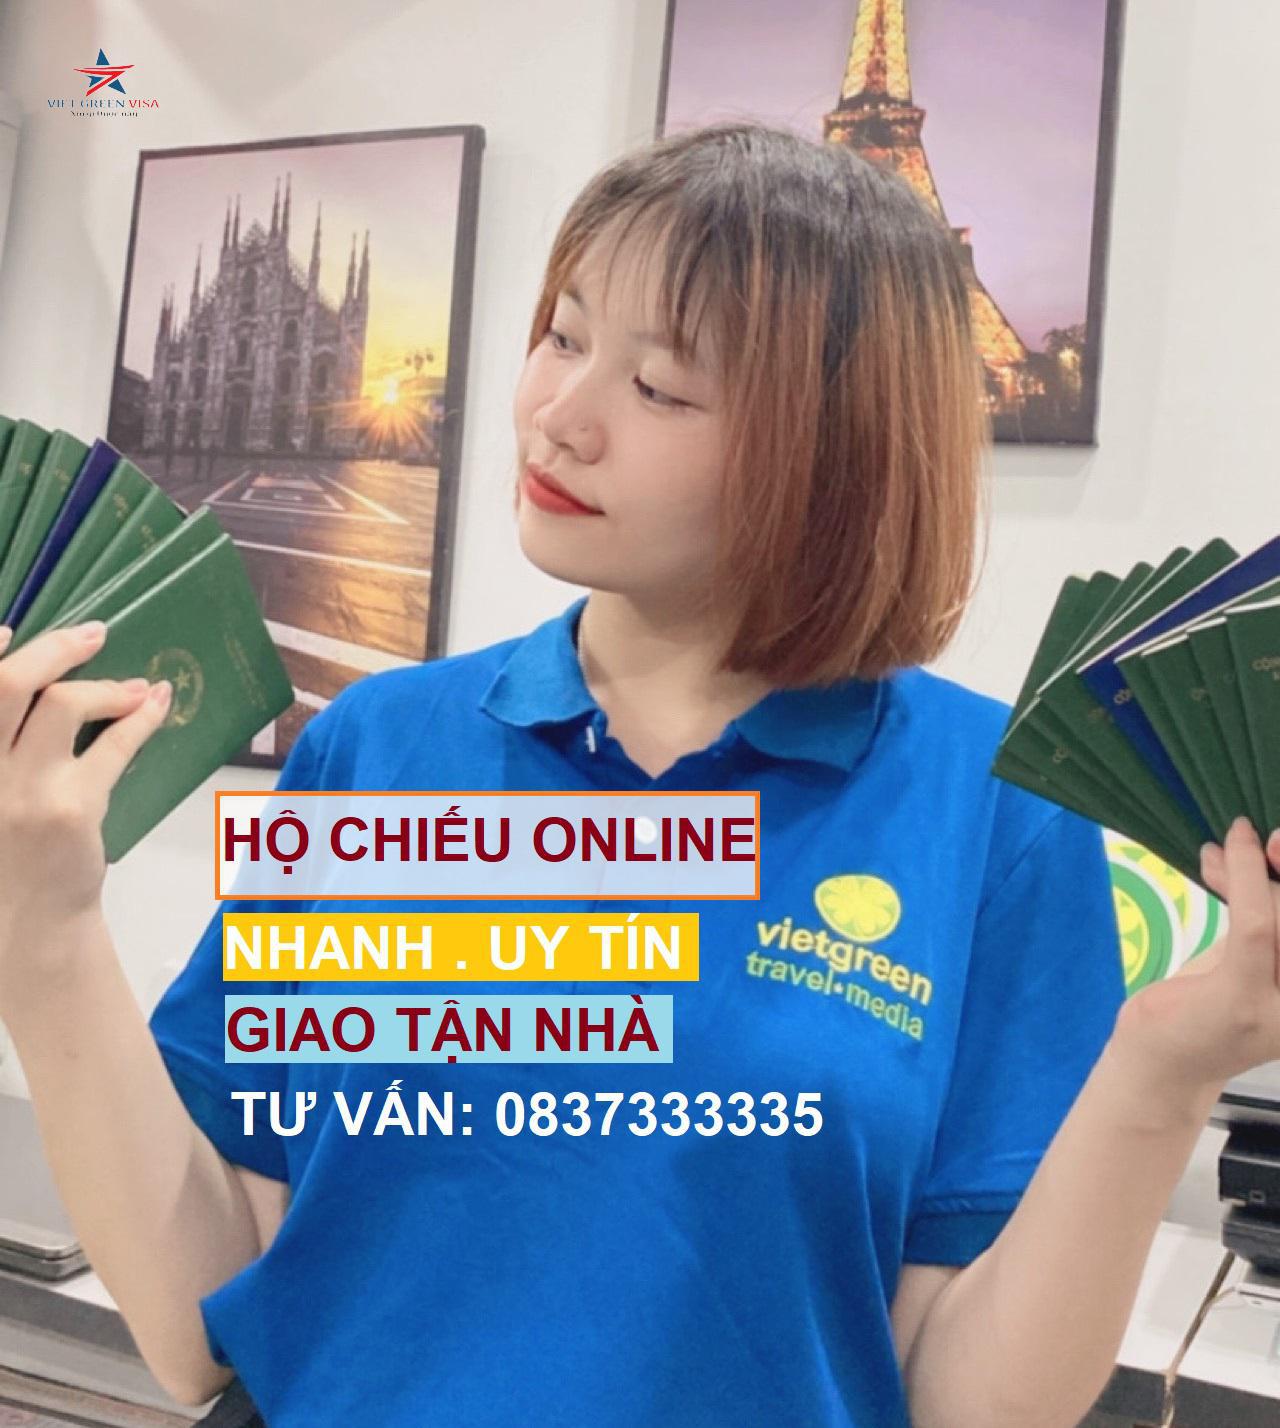 Dịch vụ làm hộ chiếu nDịch vụ làm hộ chiếu nhanh tại Hồ Chí Minh, Hộ chiếu nhanh, Hồ Chí Minhhanh tại Hà Nội, Hộ chiếu nhanh, Hà Nội